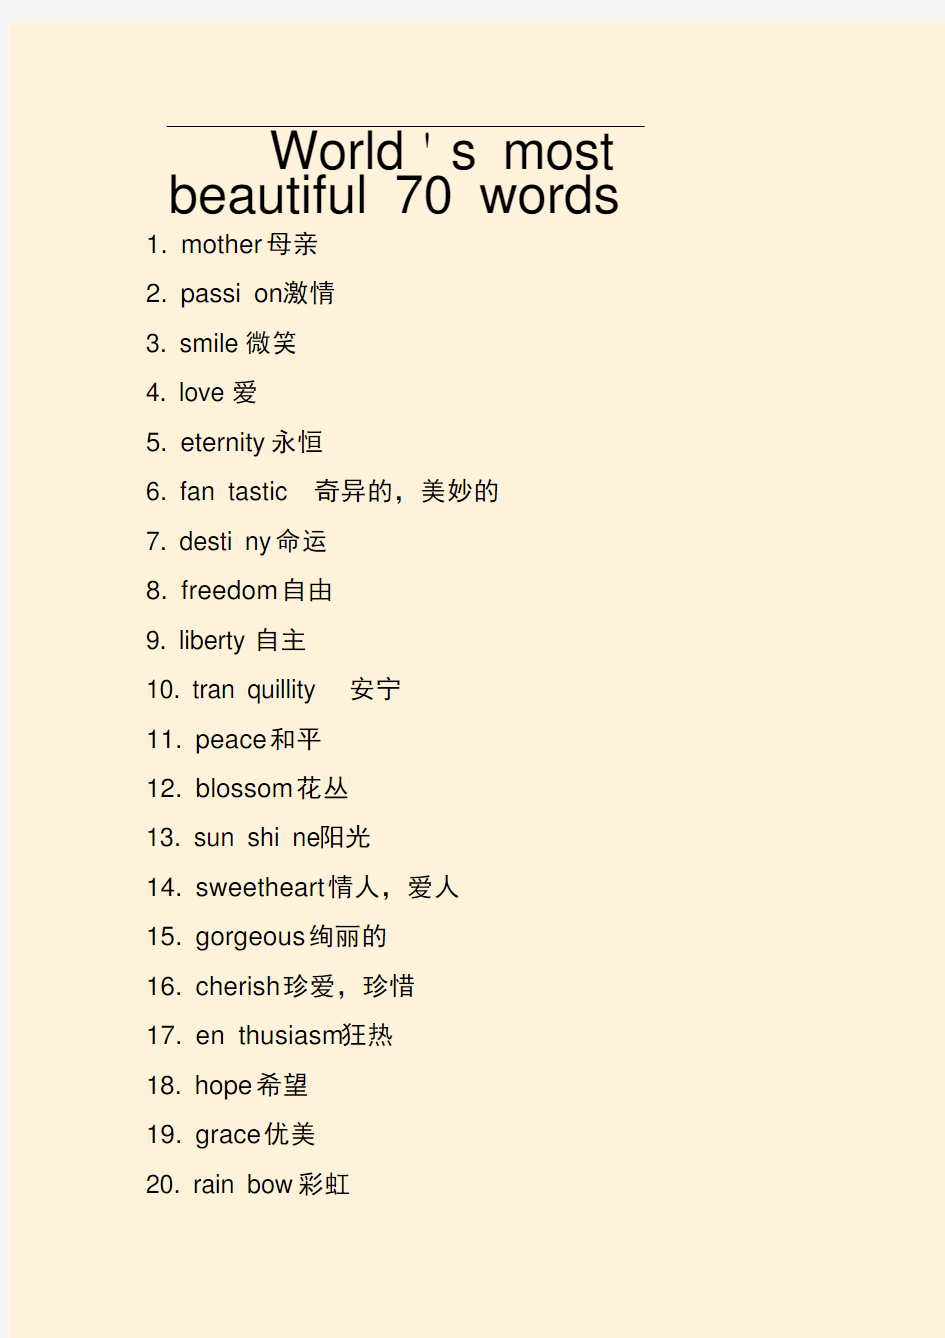 世界上最美的70个英文单词(精美打印版)